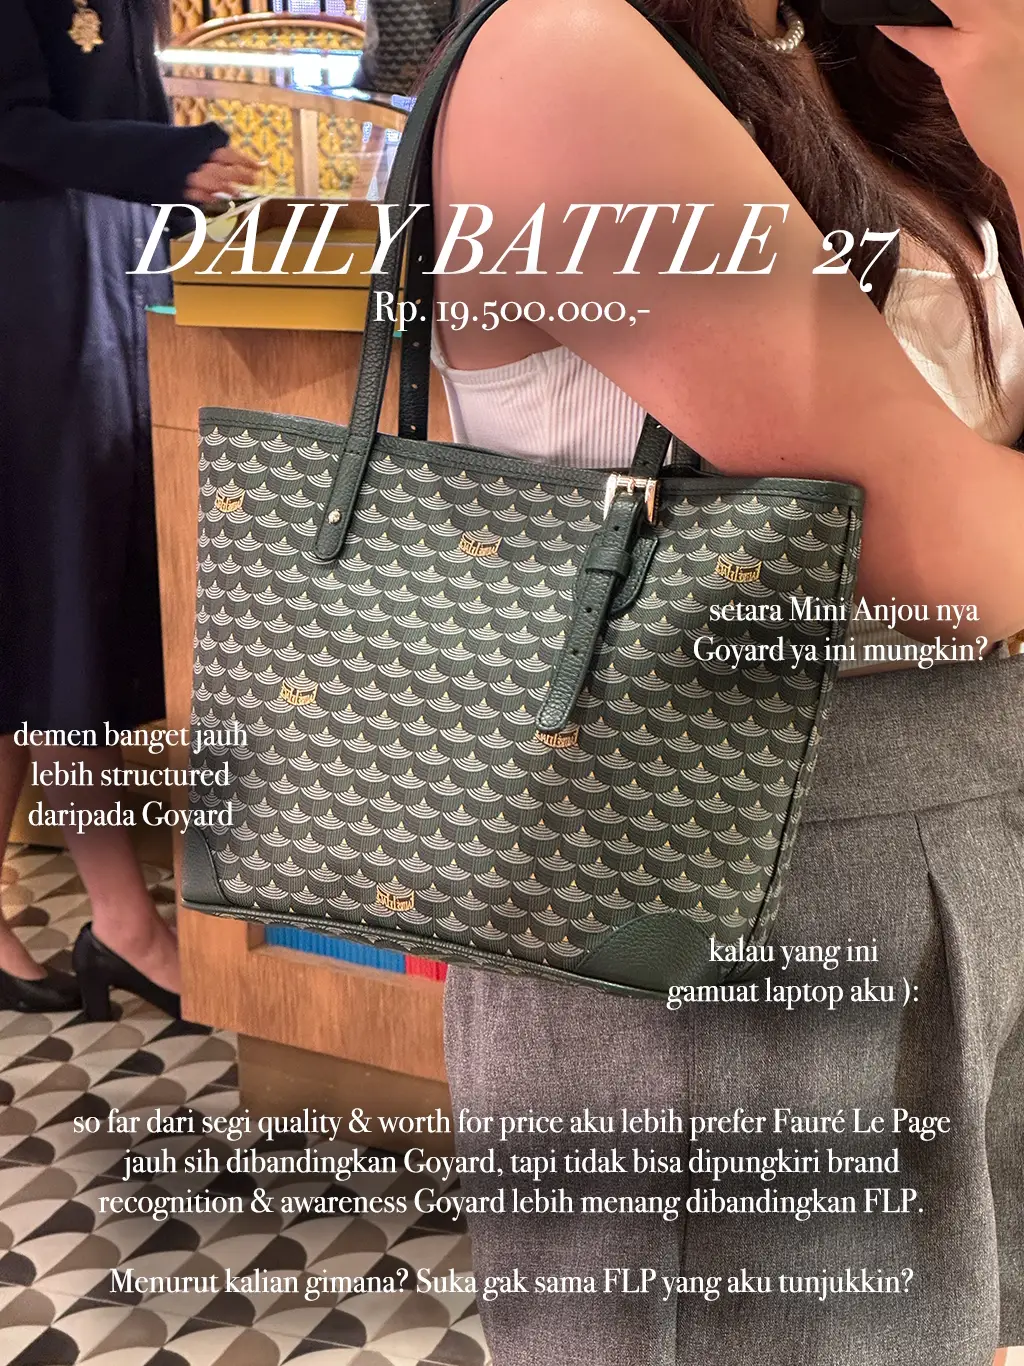 Fauré Le Page Daily Battle Tote Bag Honest Review